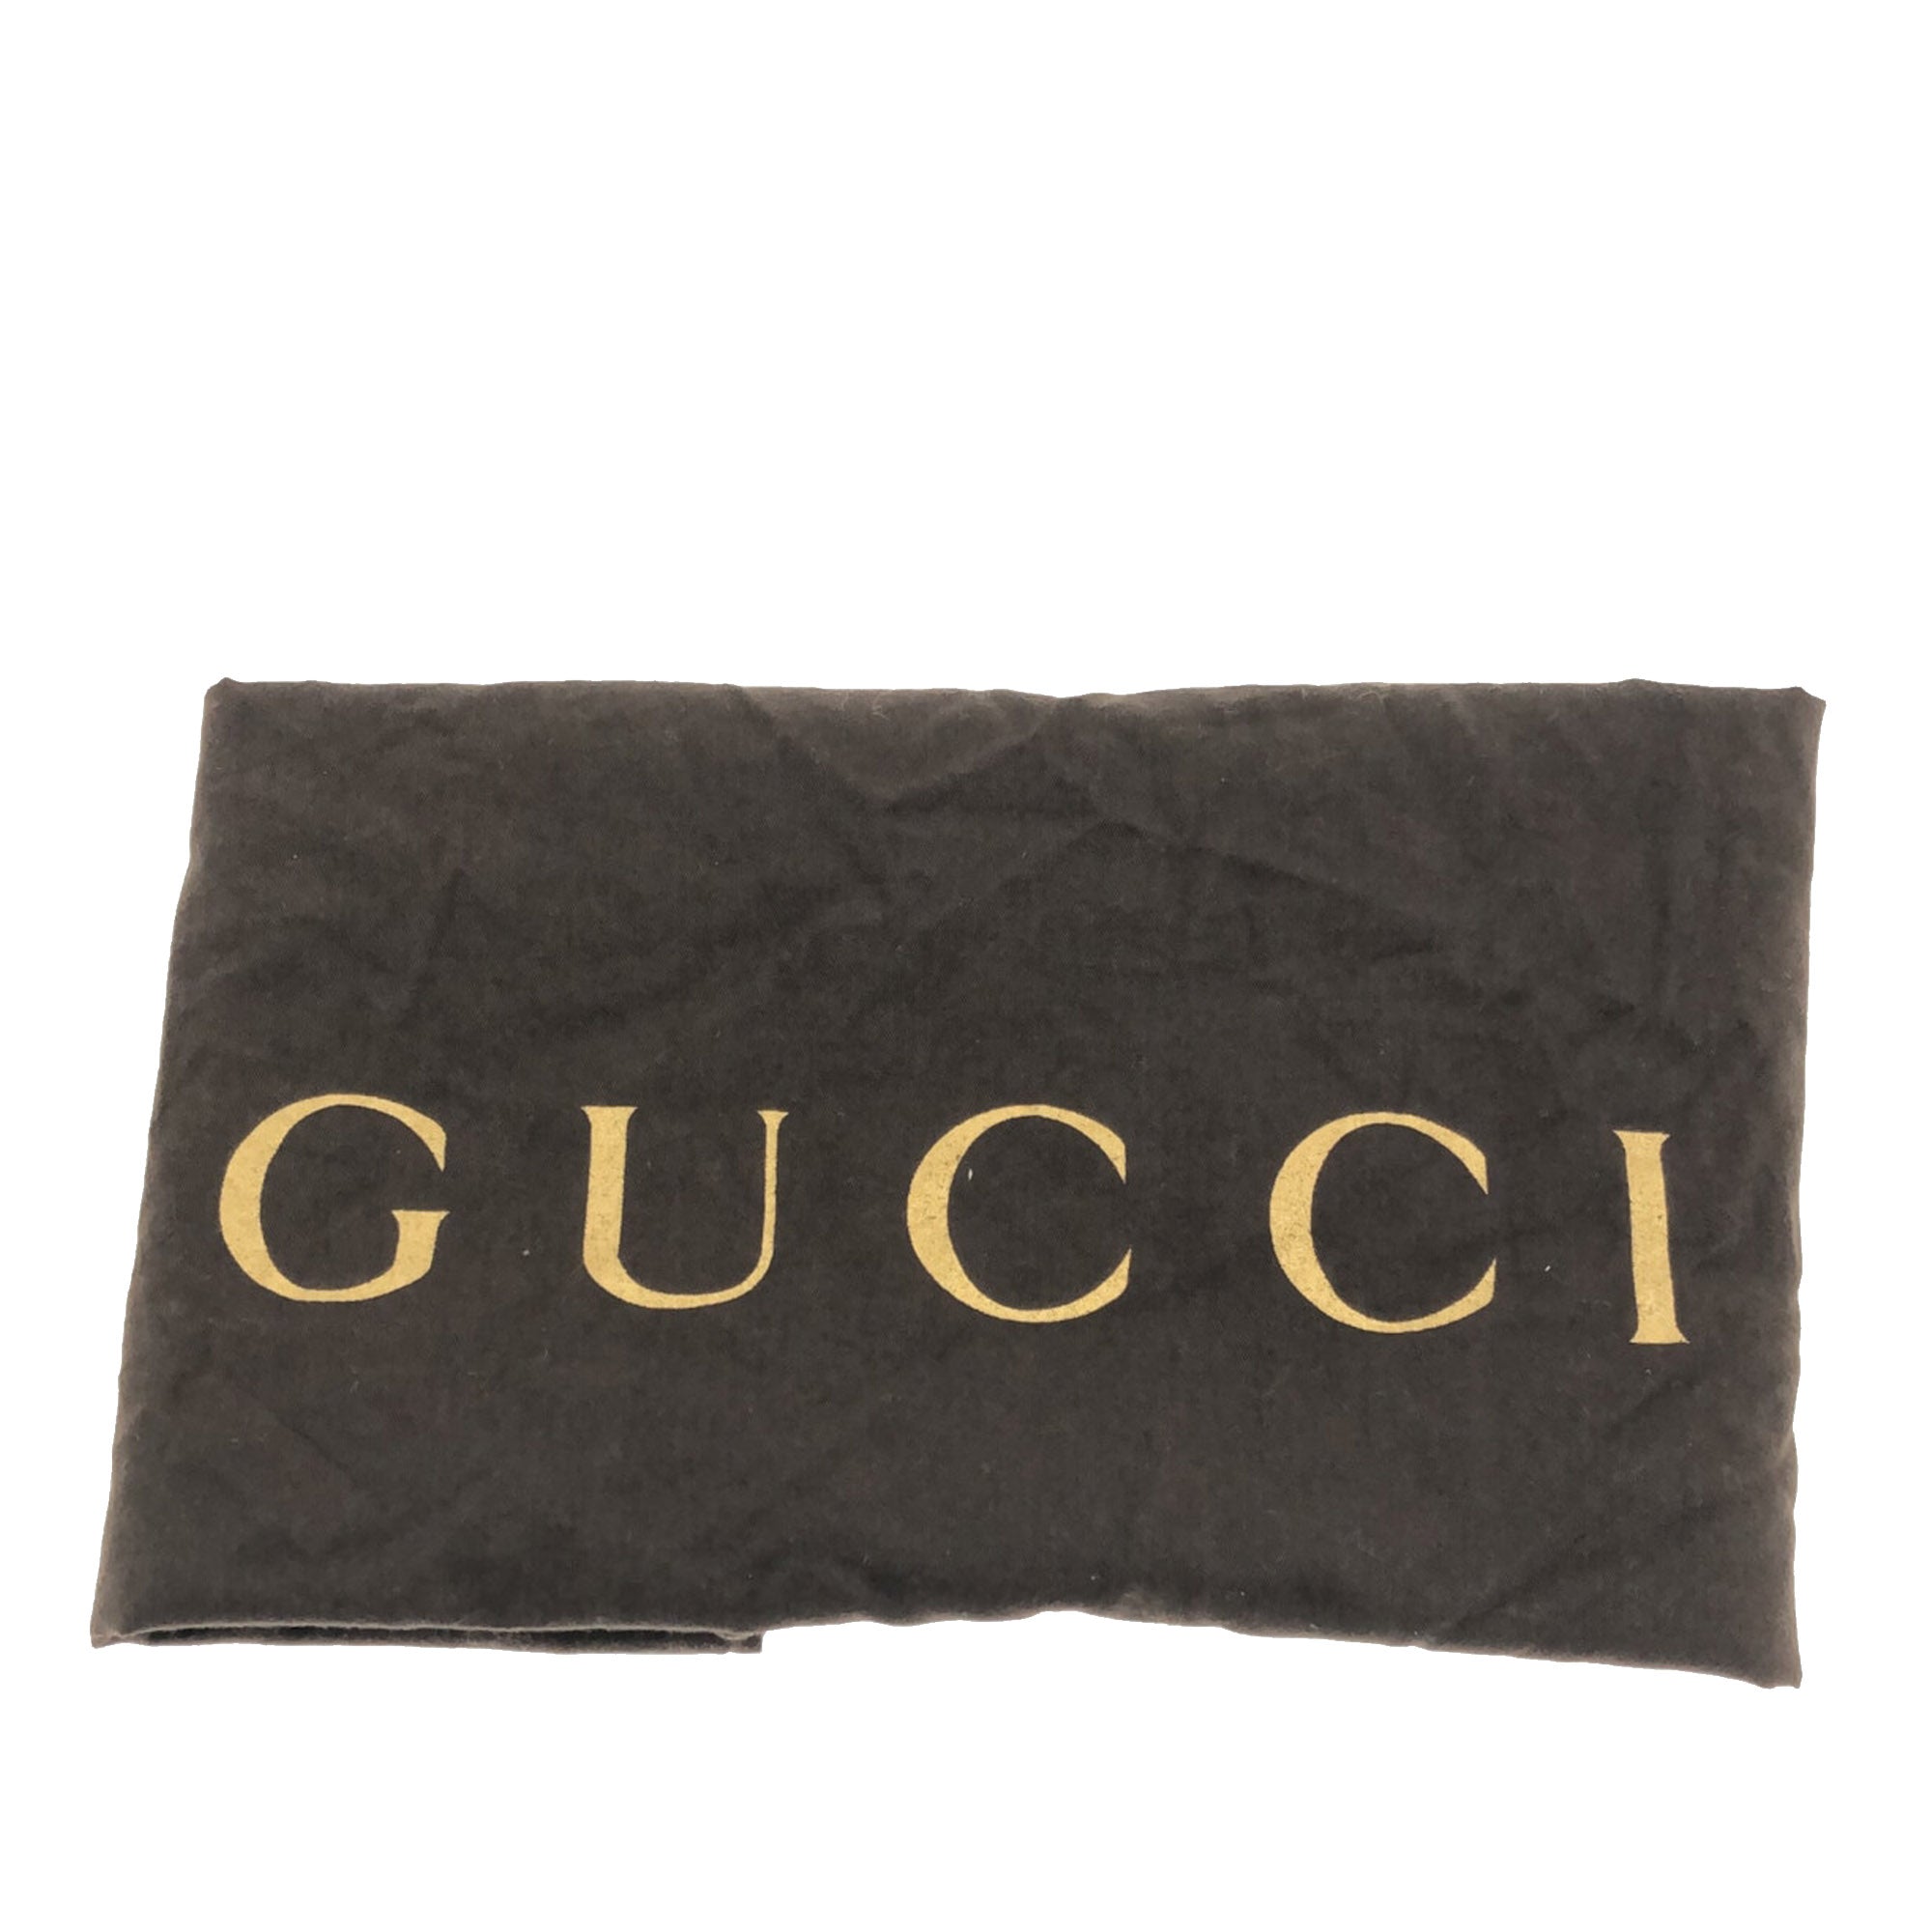 Gucci Soho Original Vs Fake: How To Authenticate